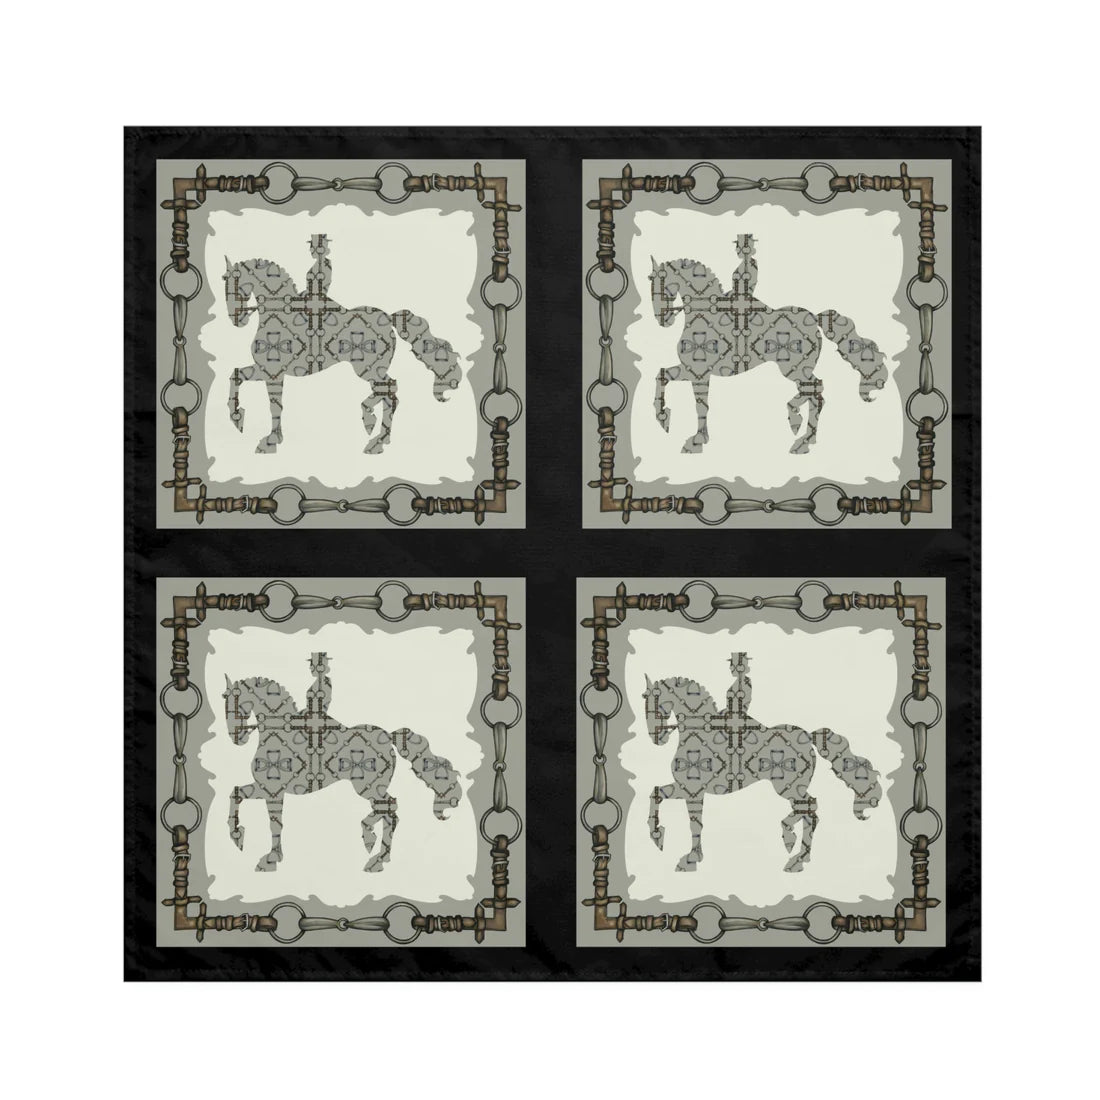 Dressage Equestrian Snaffle Bit Napkins (5 sets) 20 napkins